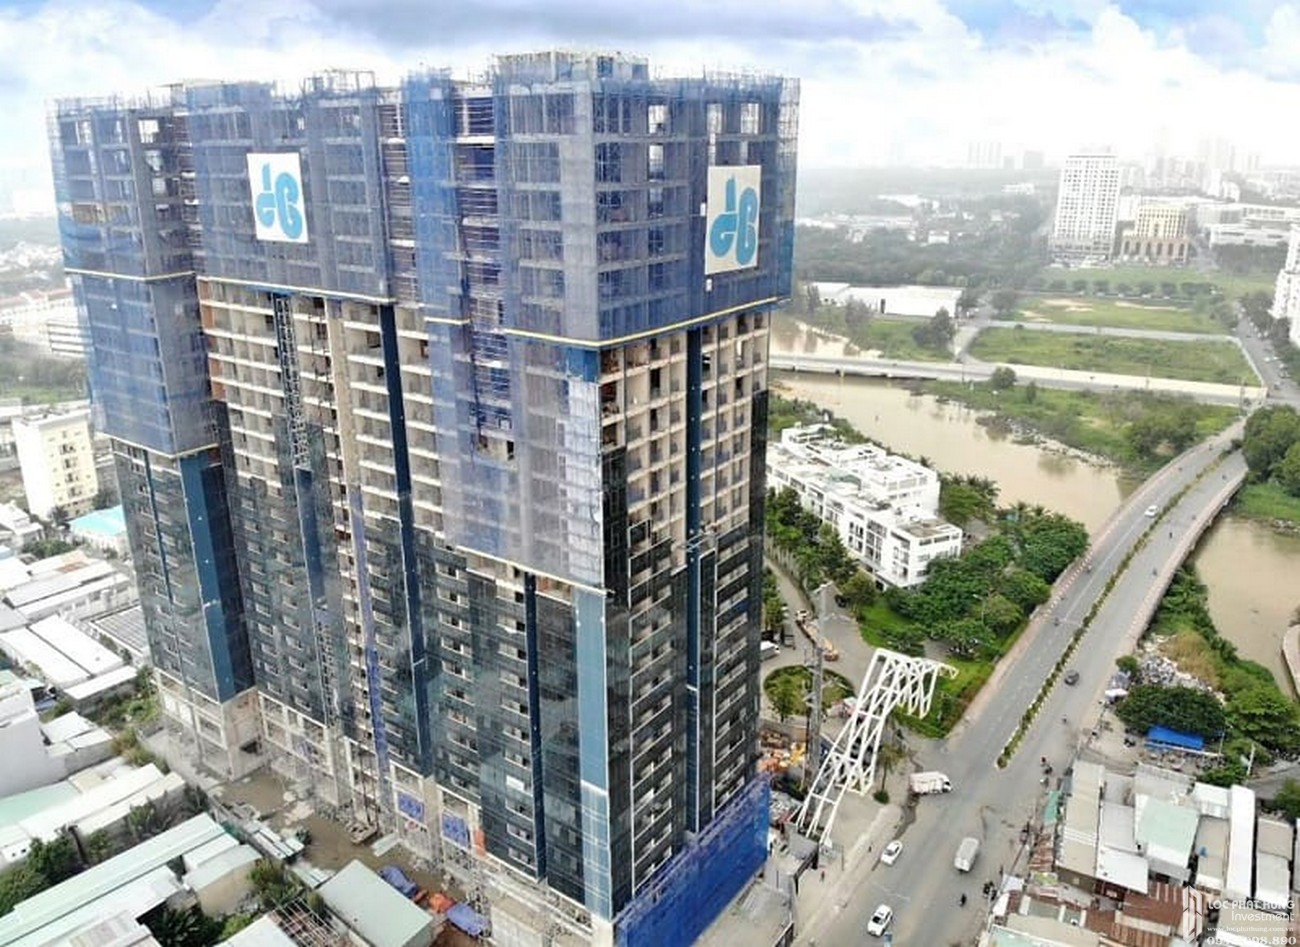 Tiến độ xây dựng dự án căn hộ Sunshine City Sài Gòn 02/2020